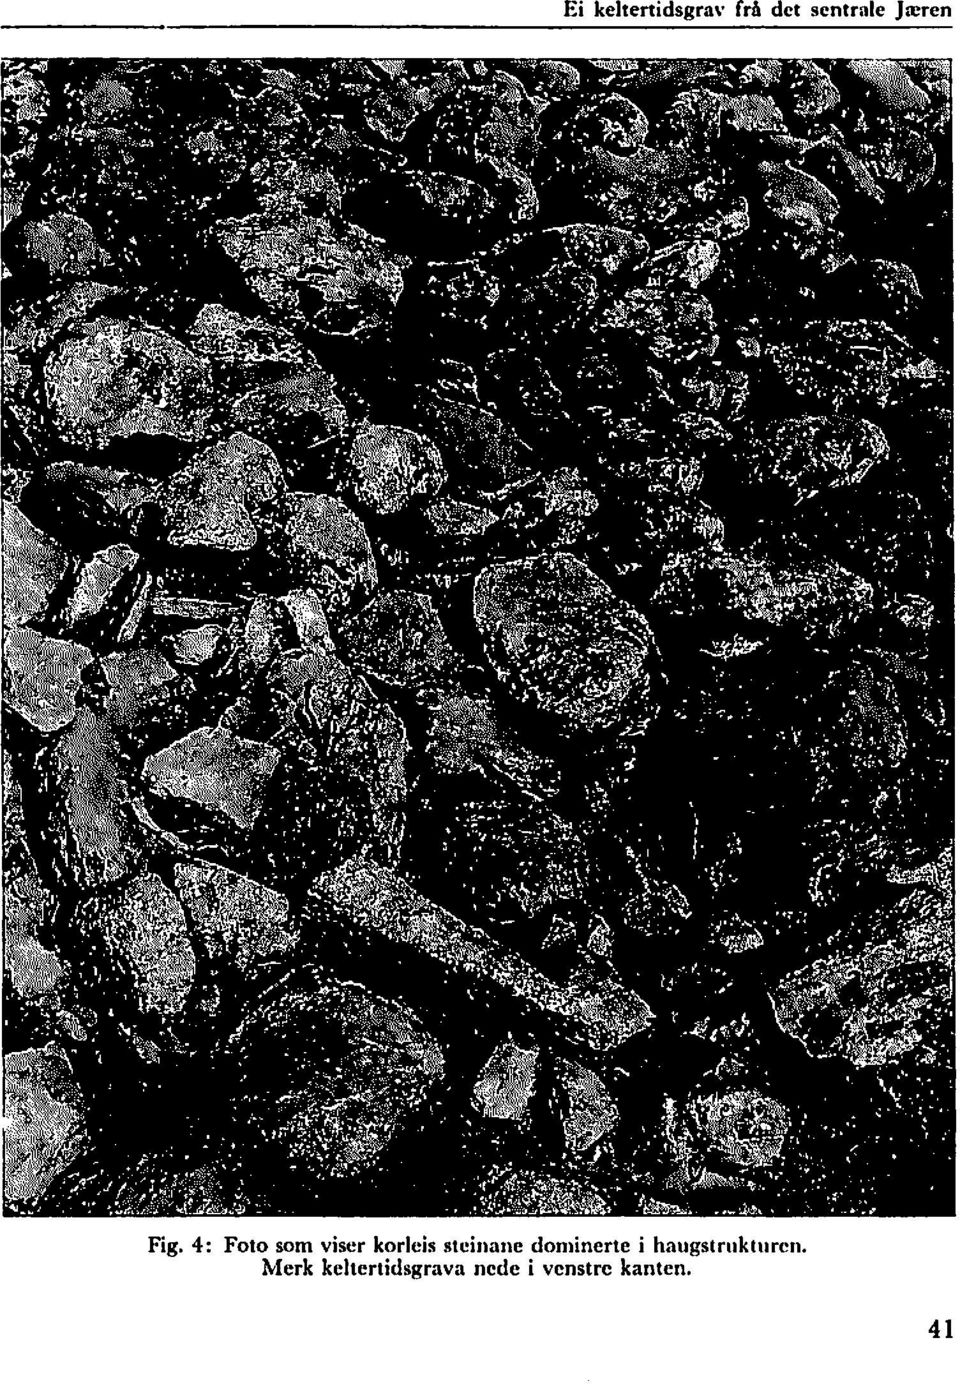 4: Foto som viser korleis steinane